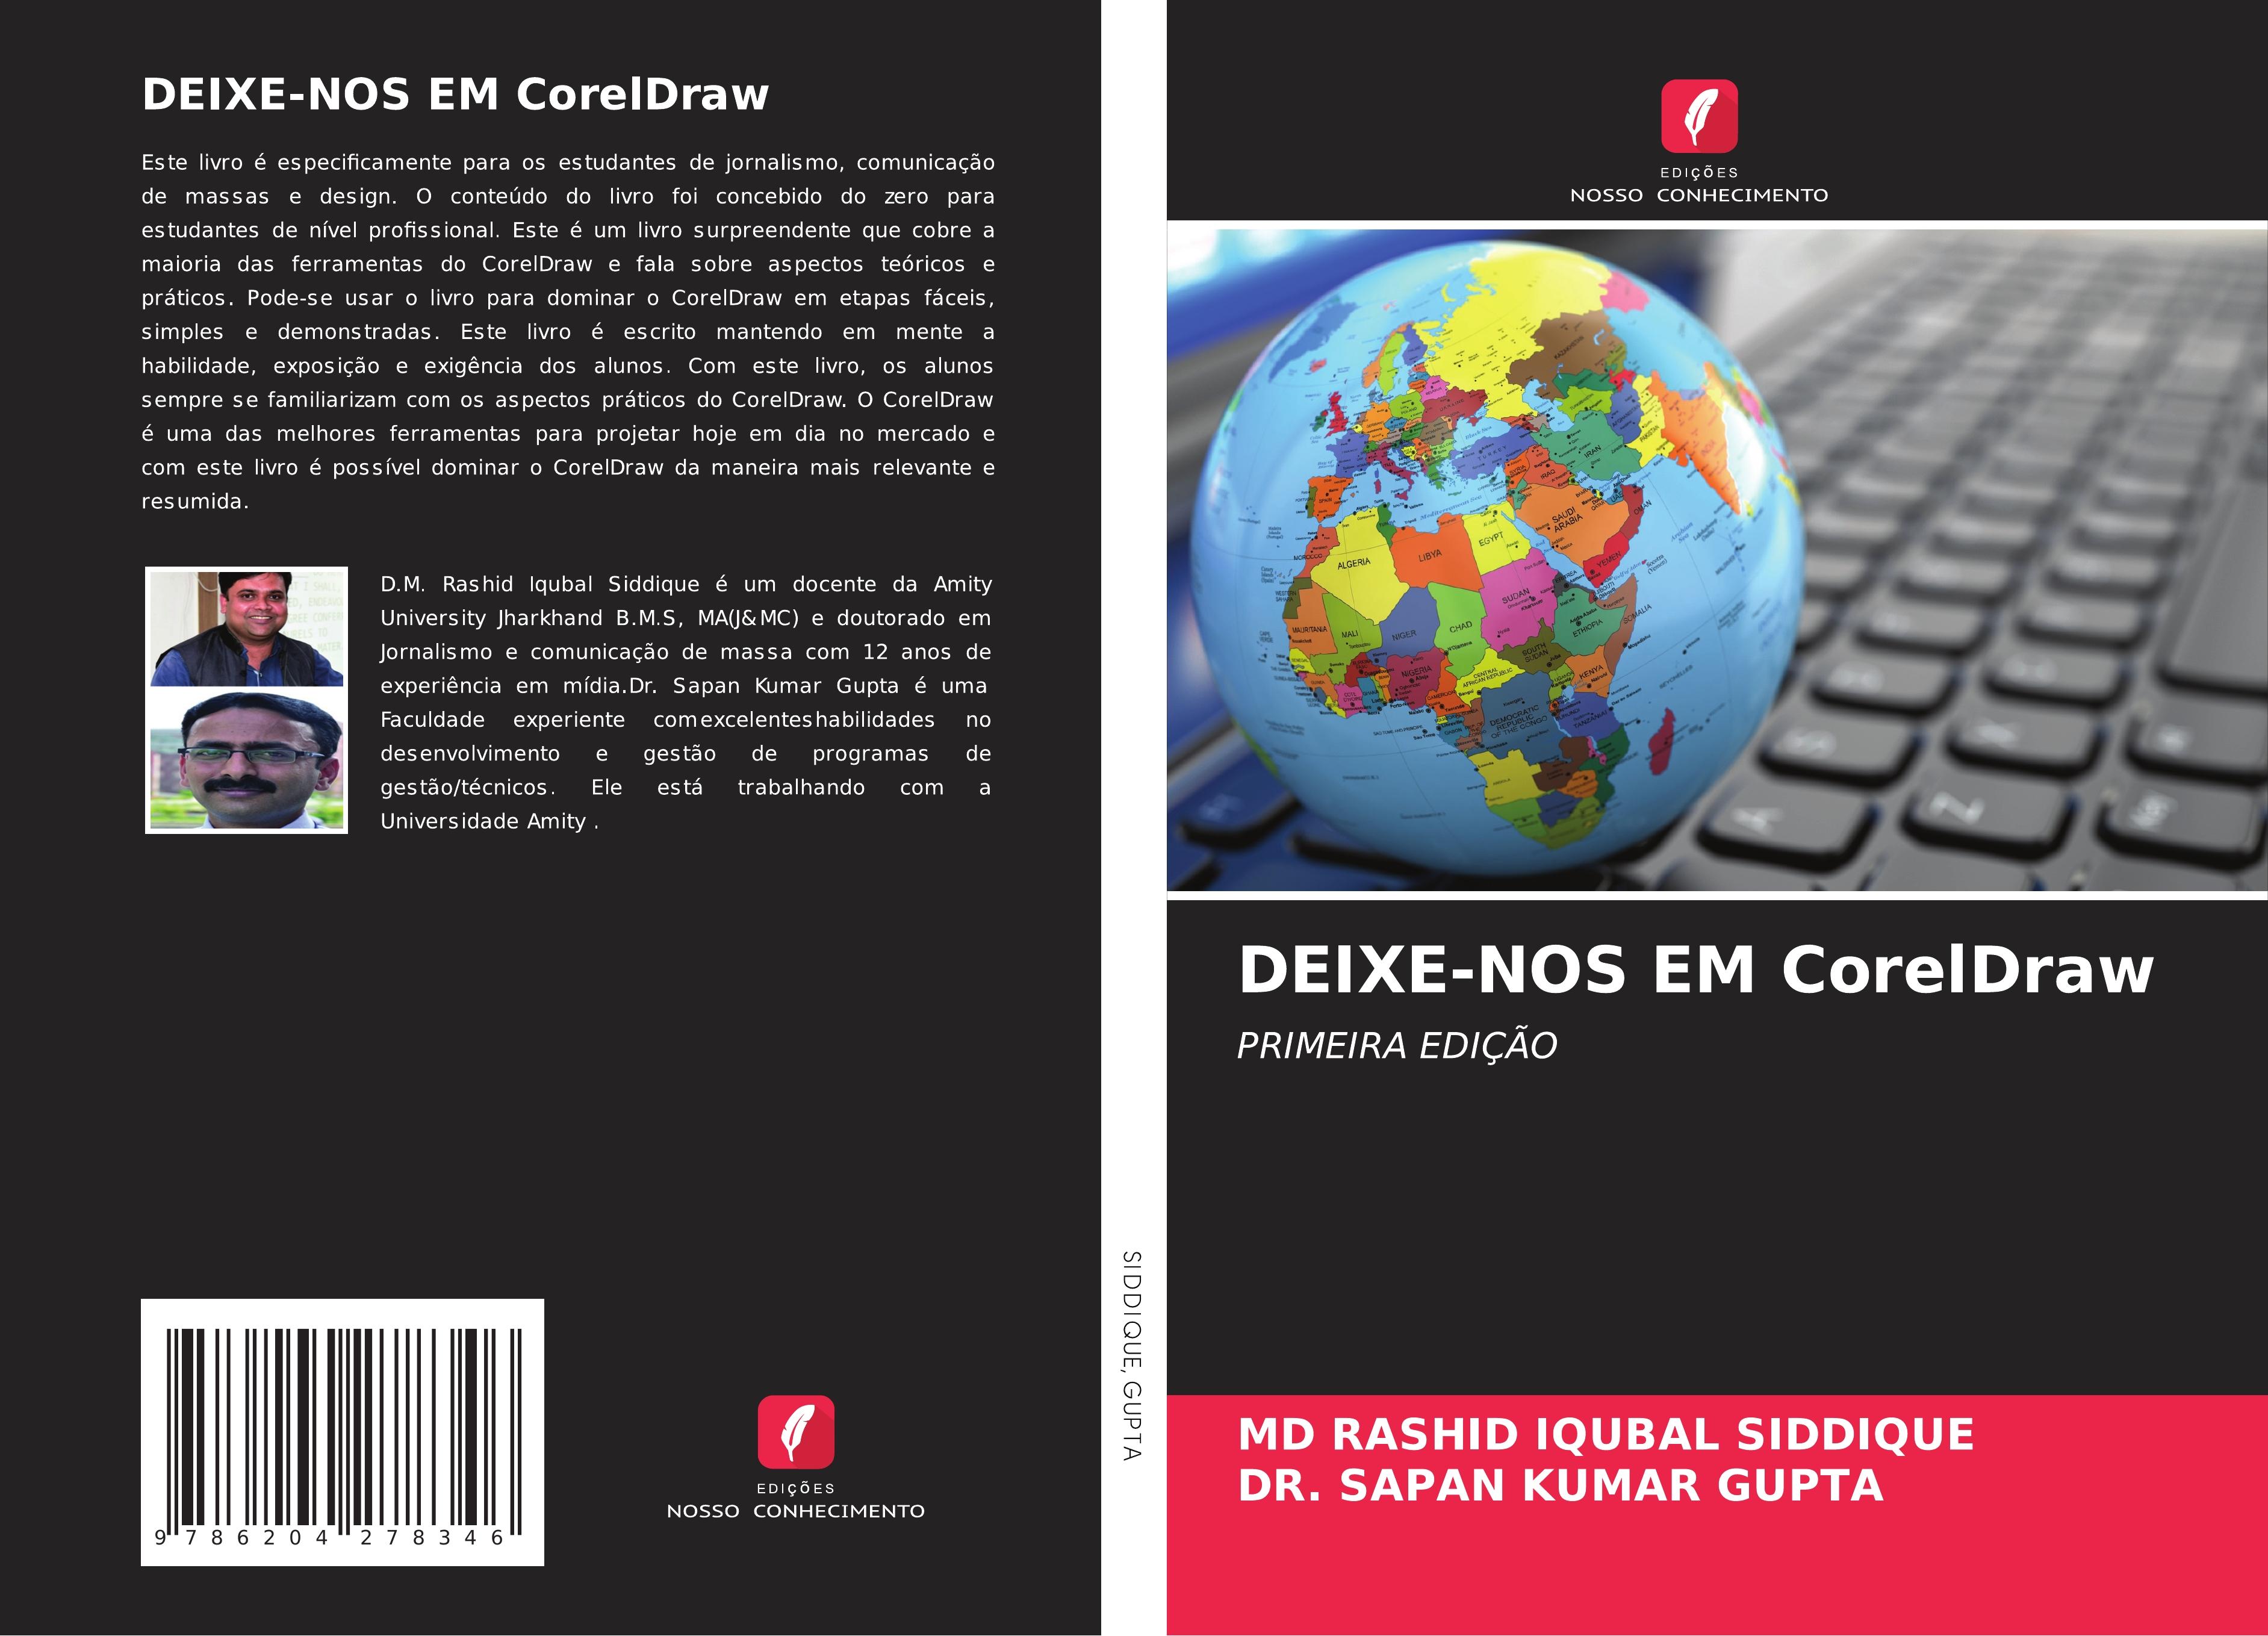 DEIXE-NOS EM CorelDraw